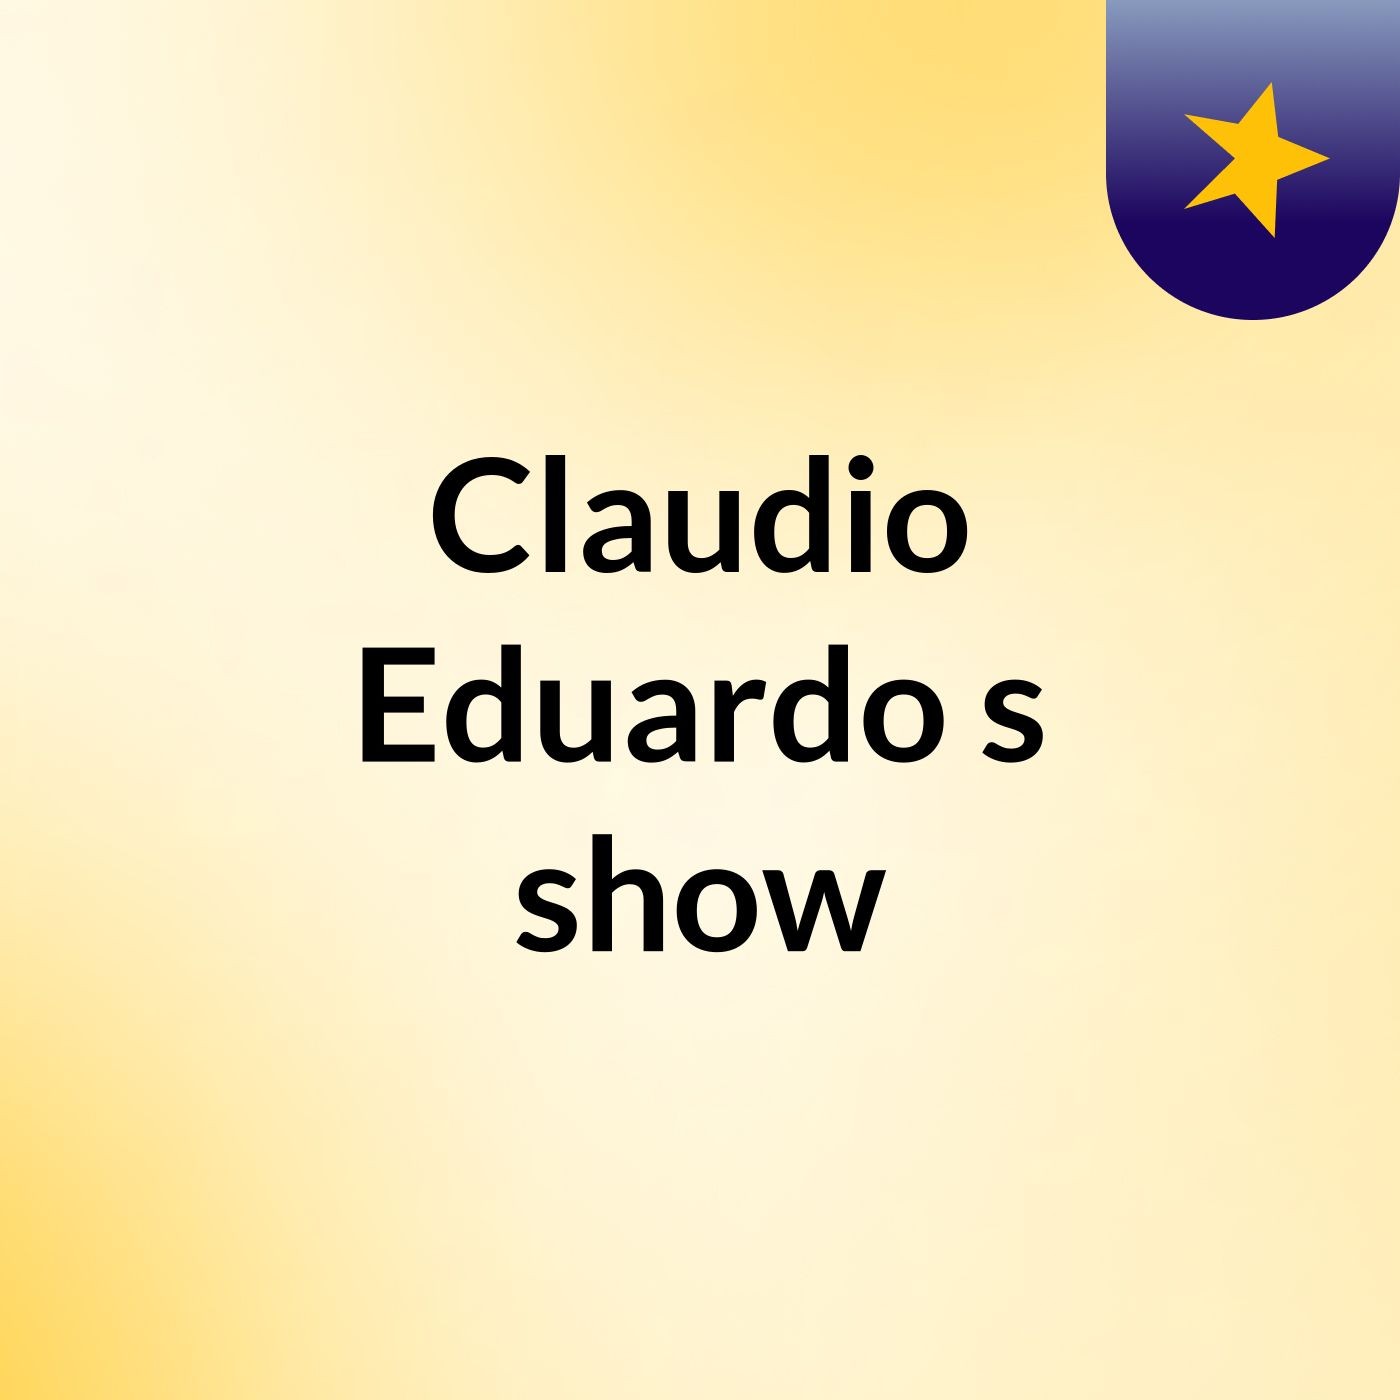 Claudio Eduardo's show